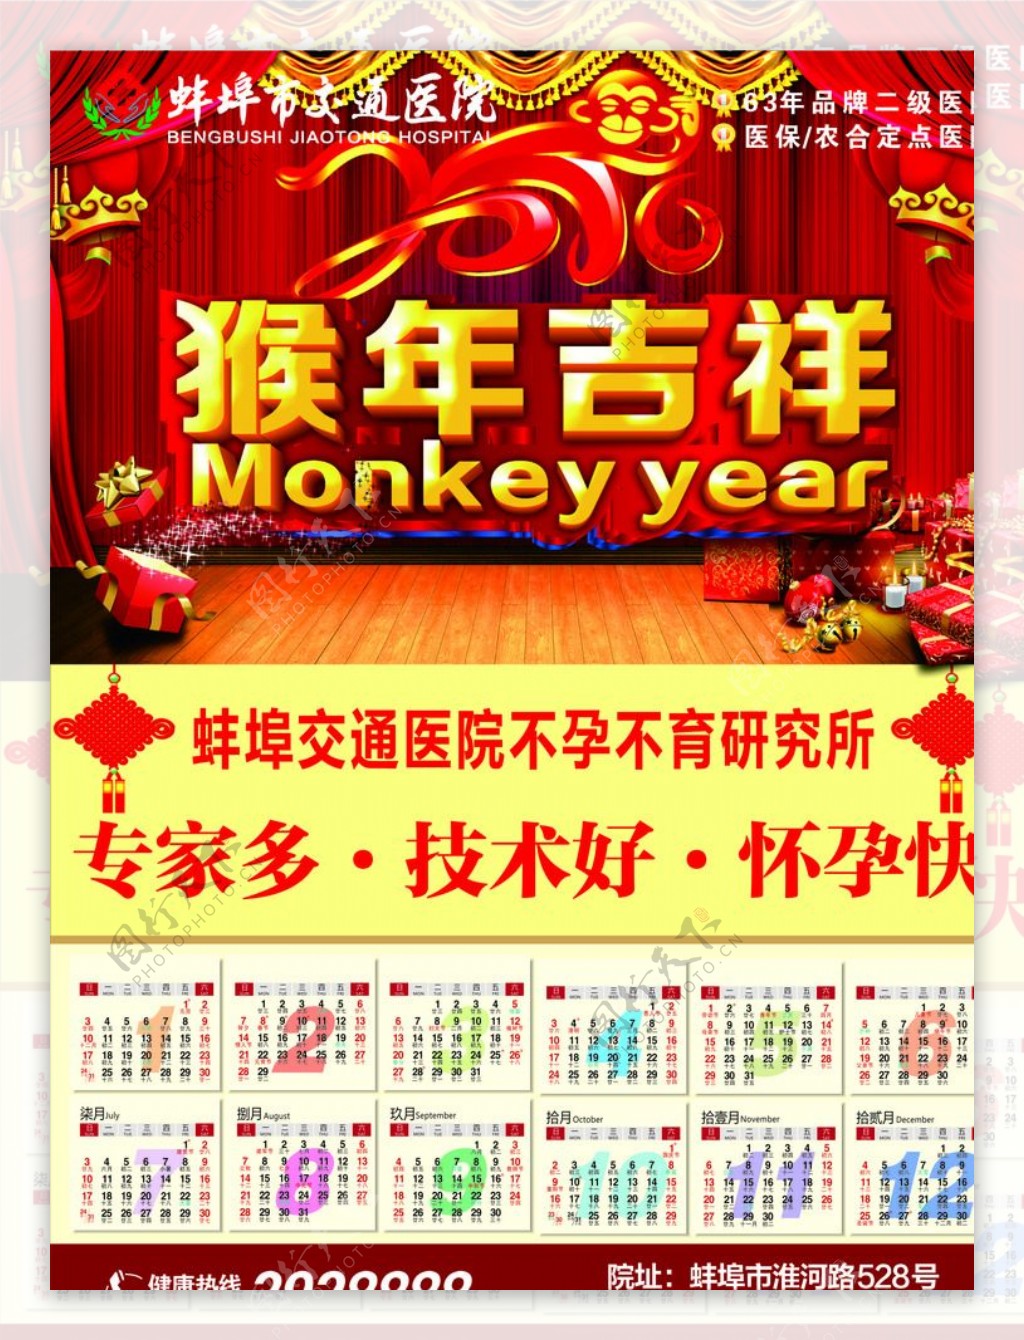 2016年猴年医院日历